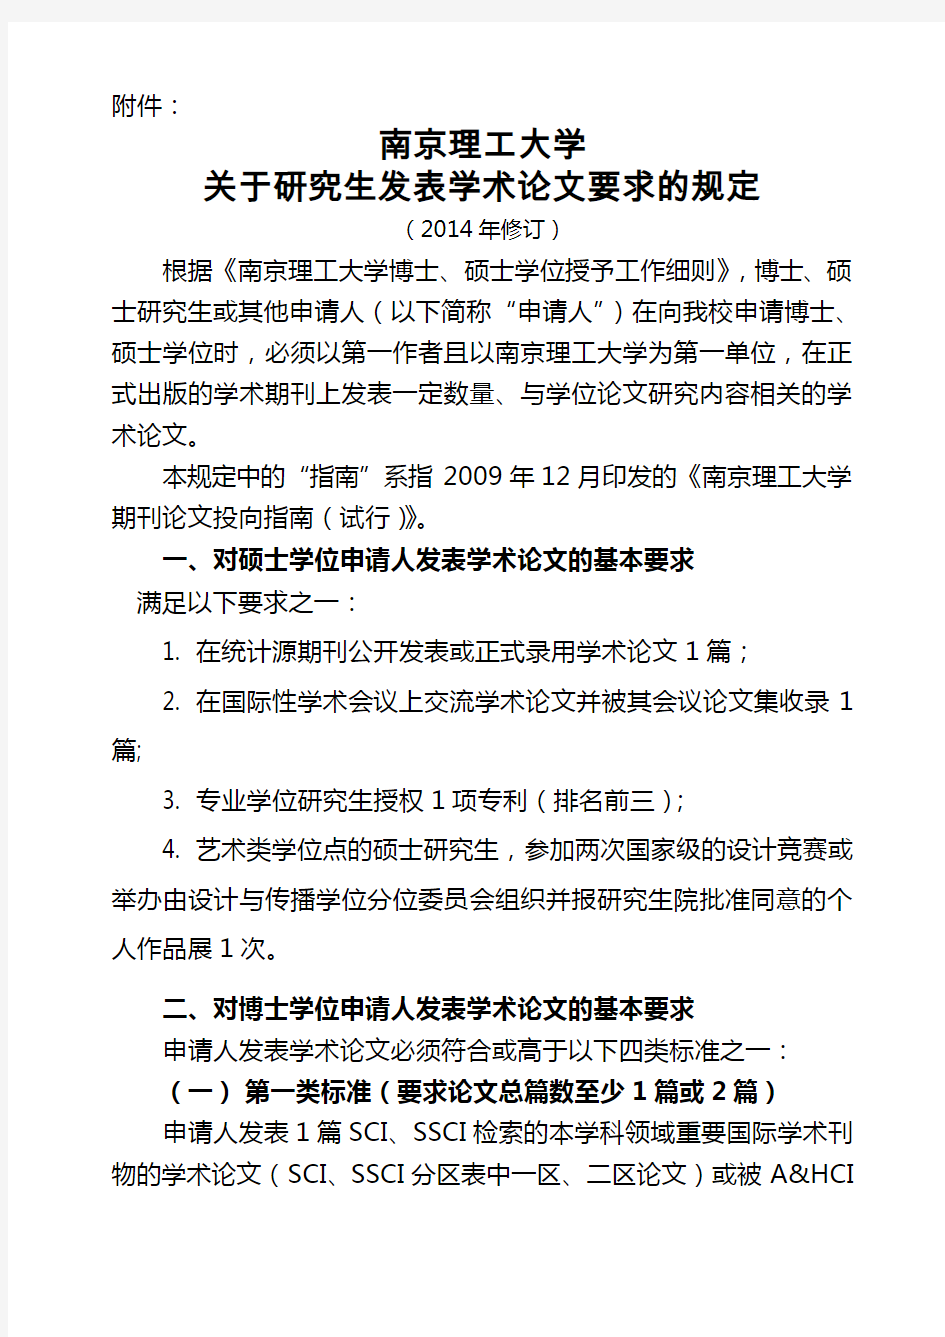 南京理工大学关于博士研究生发表学术论文要求的规定修订